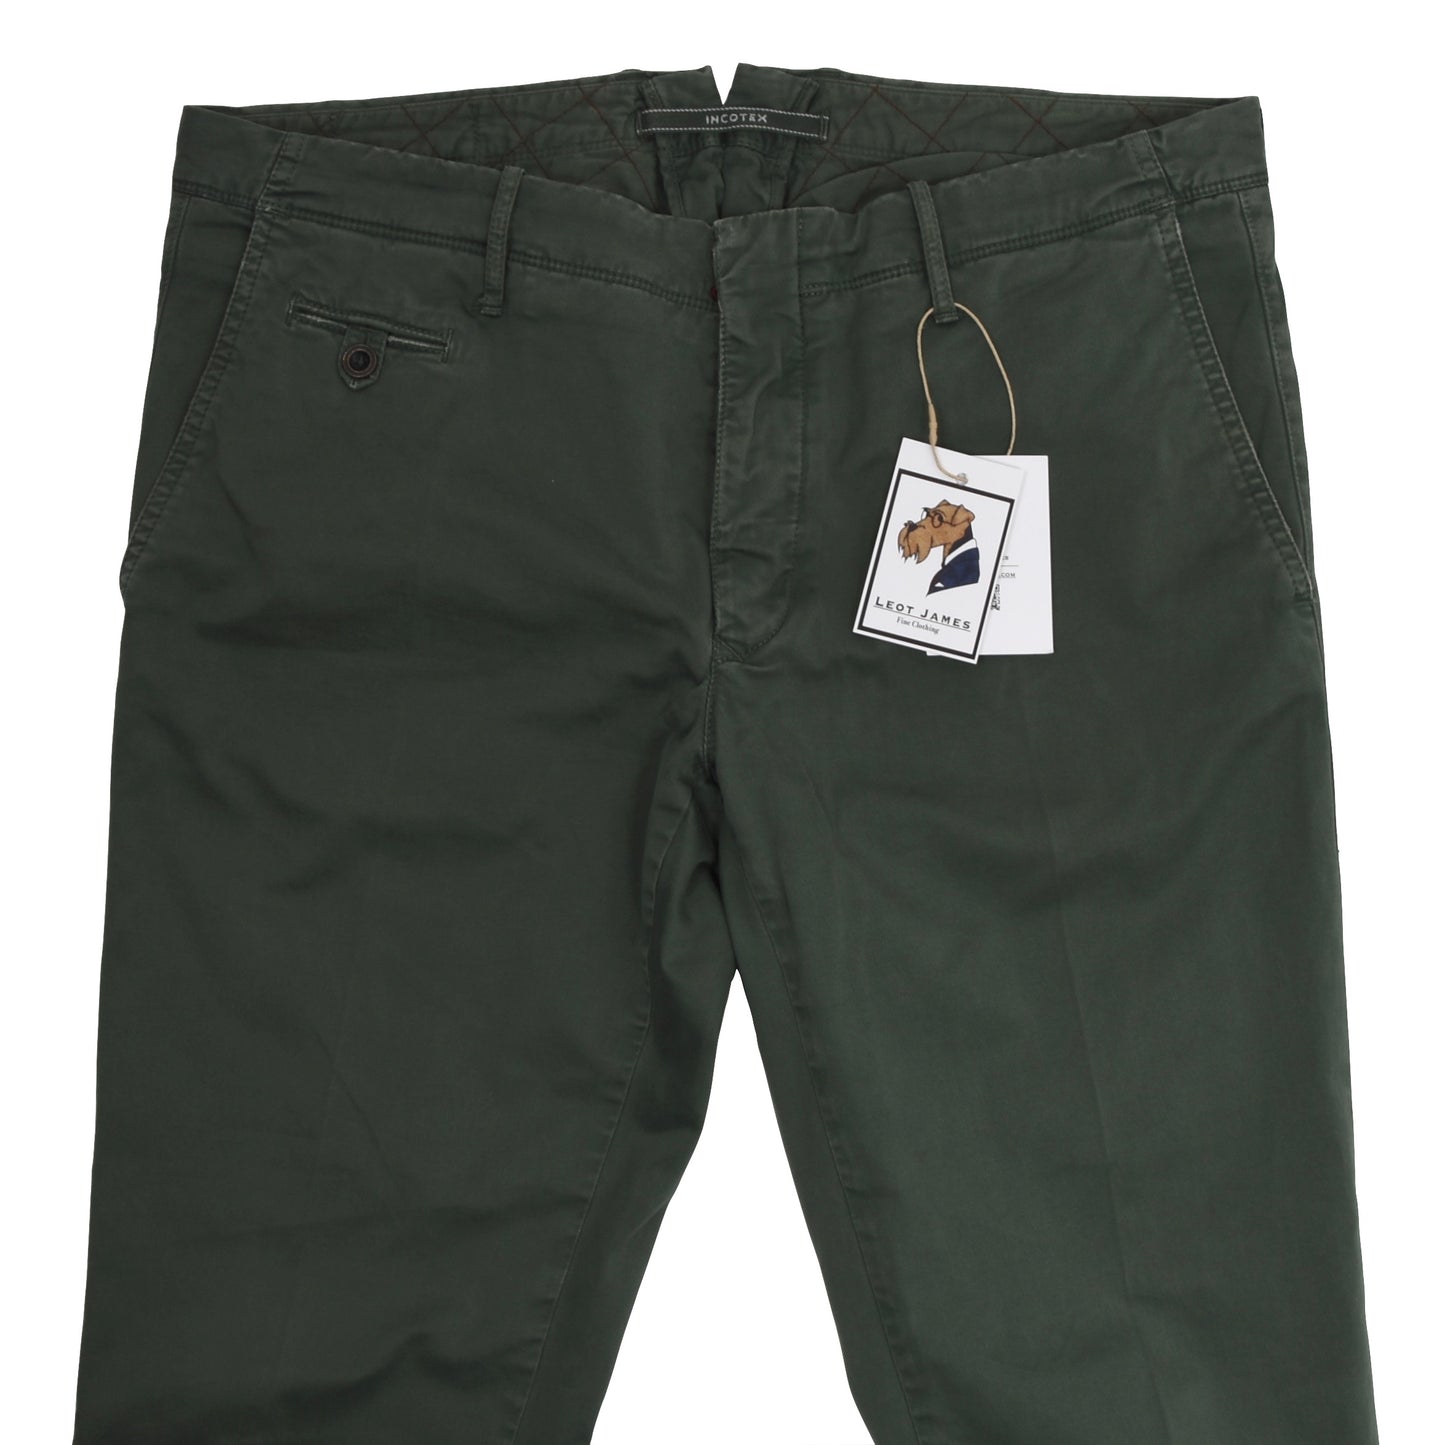 Incotex Cotton Pants Size 38 - Army Green